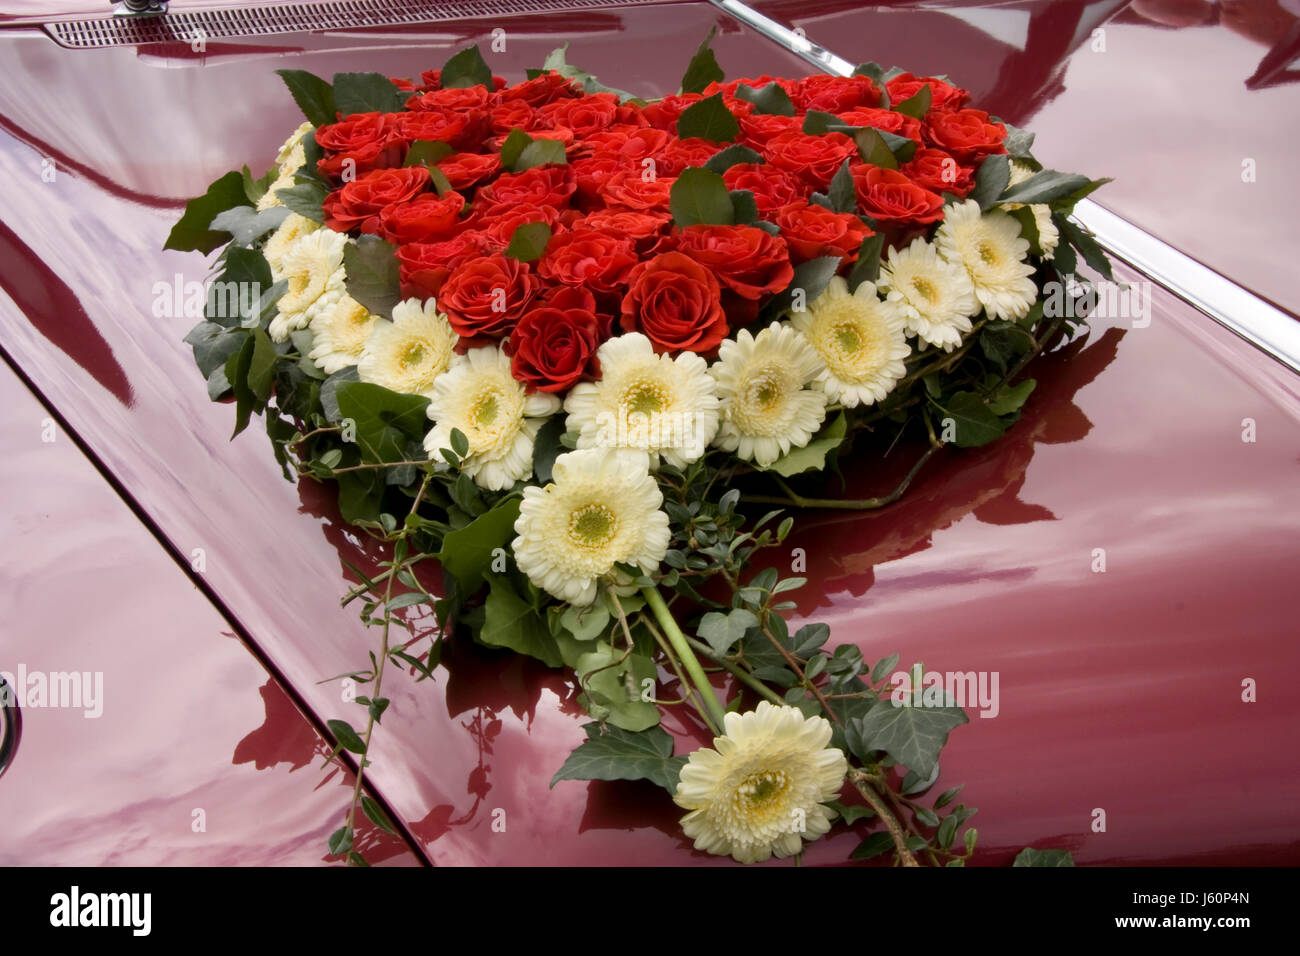 Fiorello rosario immagini e fotografie stock ad alta risoluzione - Alamy